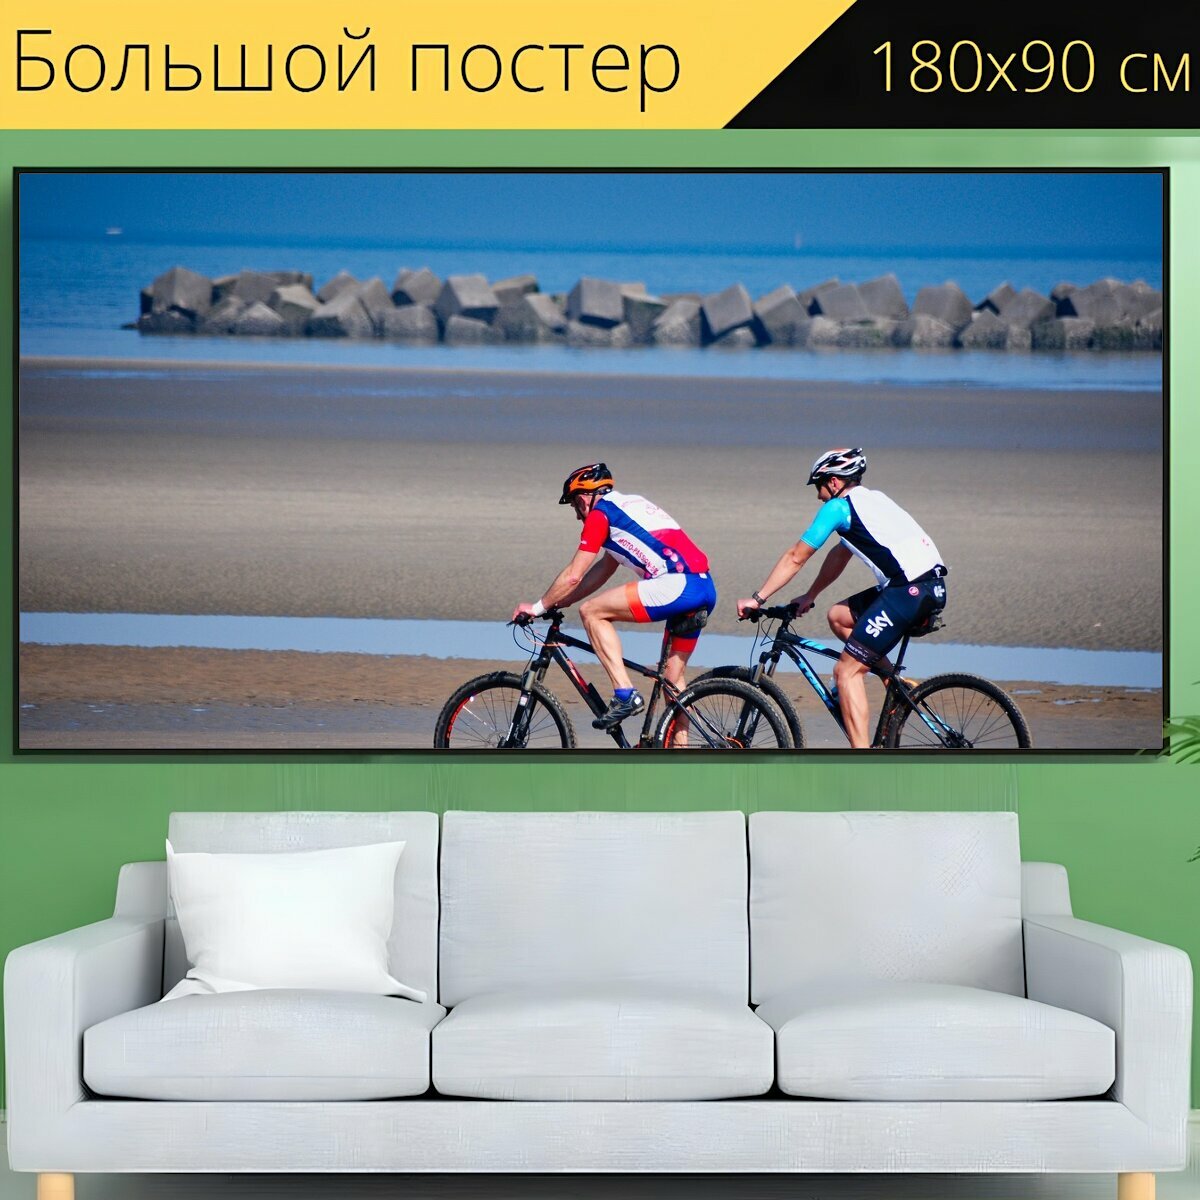 Большой постер "Велосипед, велосипедист, кататься на велосипеде" 180 x 90 см. для интерьера